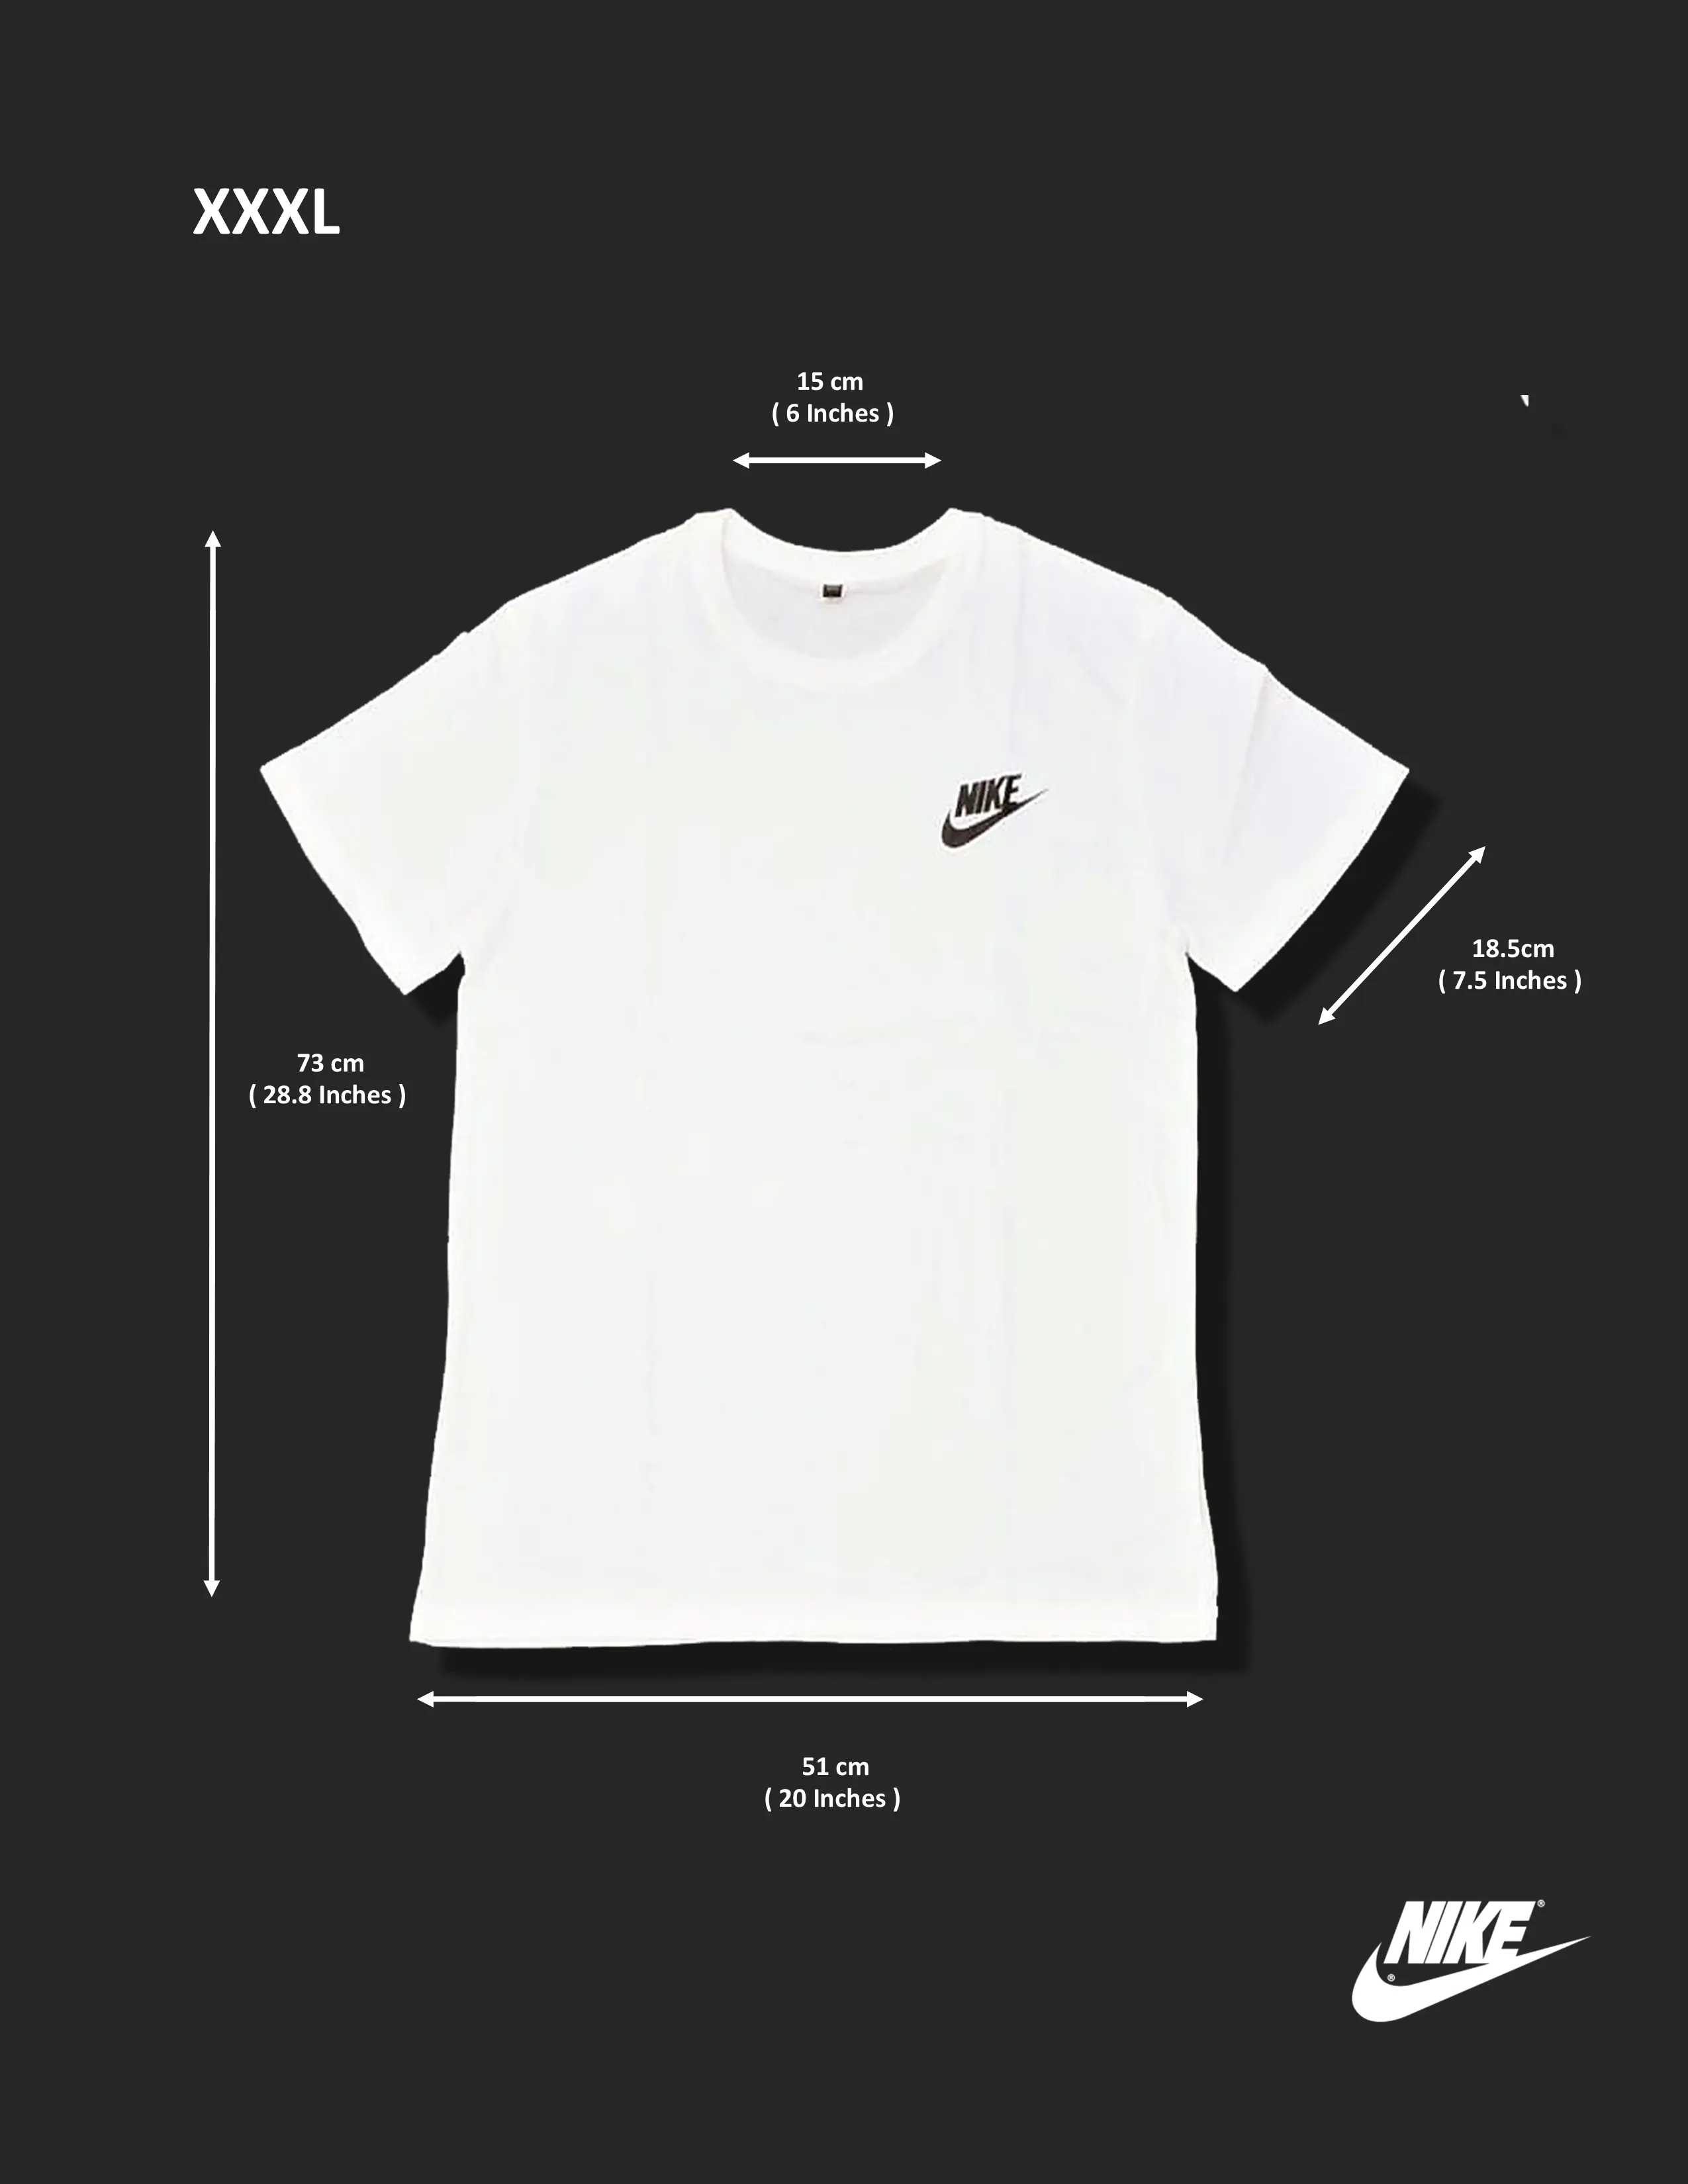 Stylish Nike T-Shirt Unisex 100% Cotton 